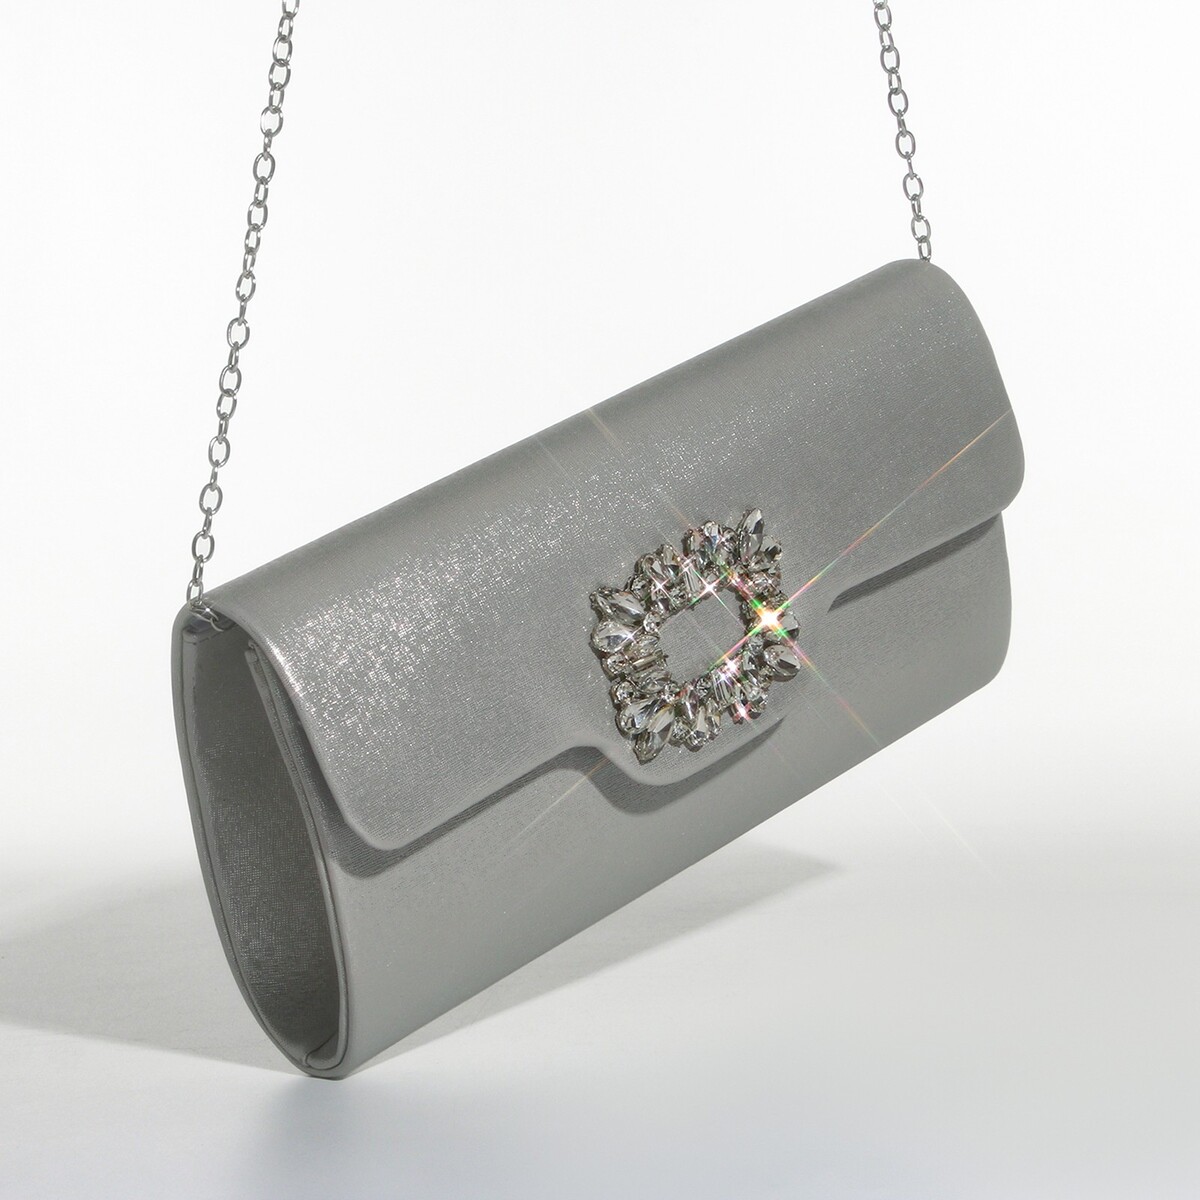 Сумка-клатч на магните, цвет серебряный сумка клатч на магните серебряный